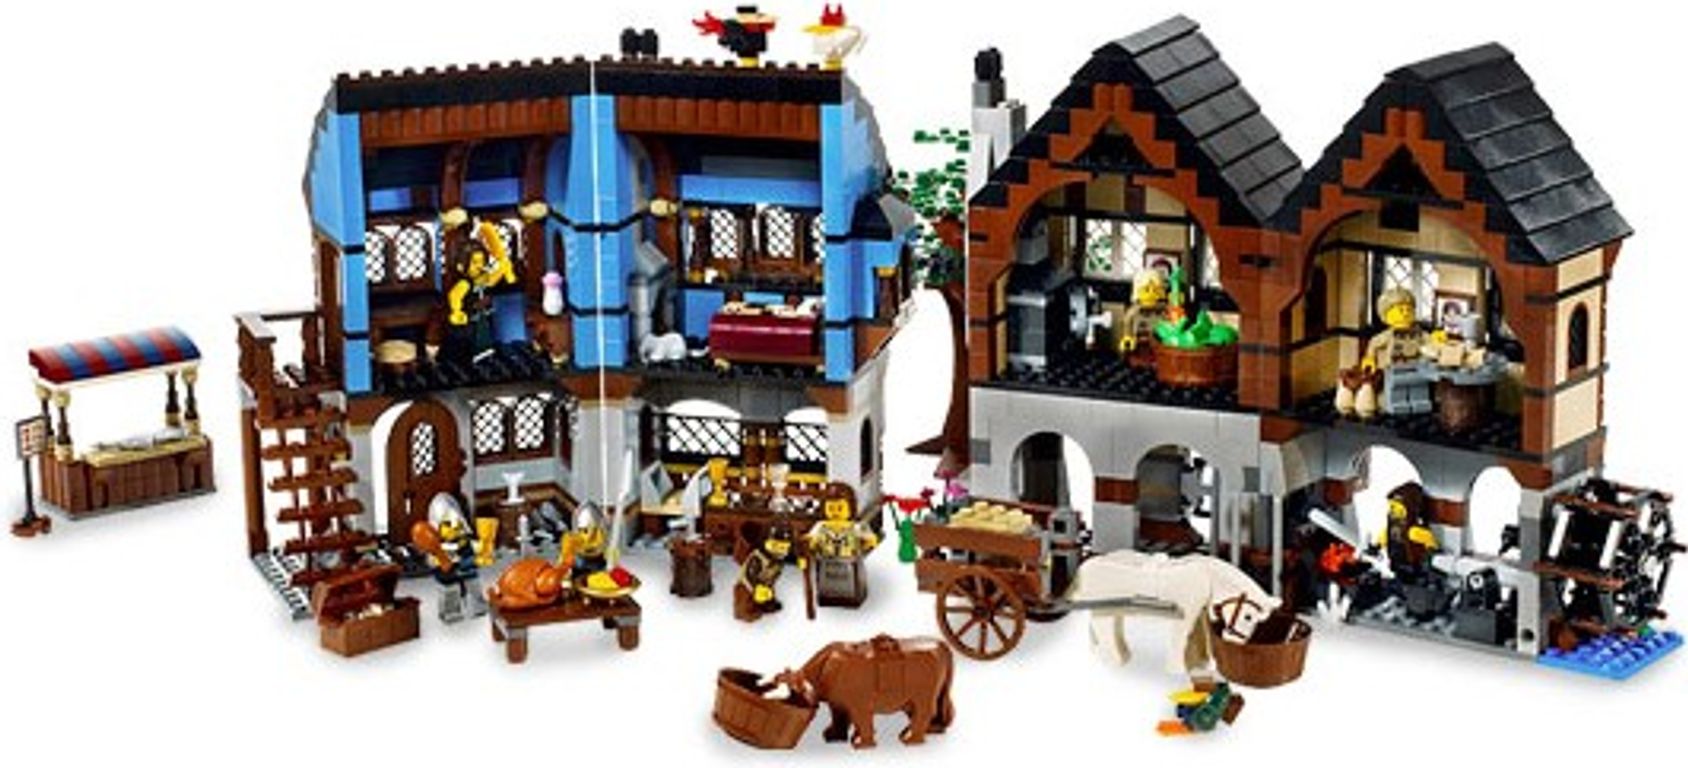 LEGO® Castle Medieval Market Village interior